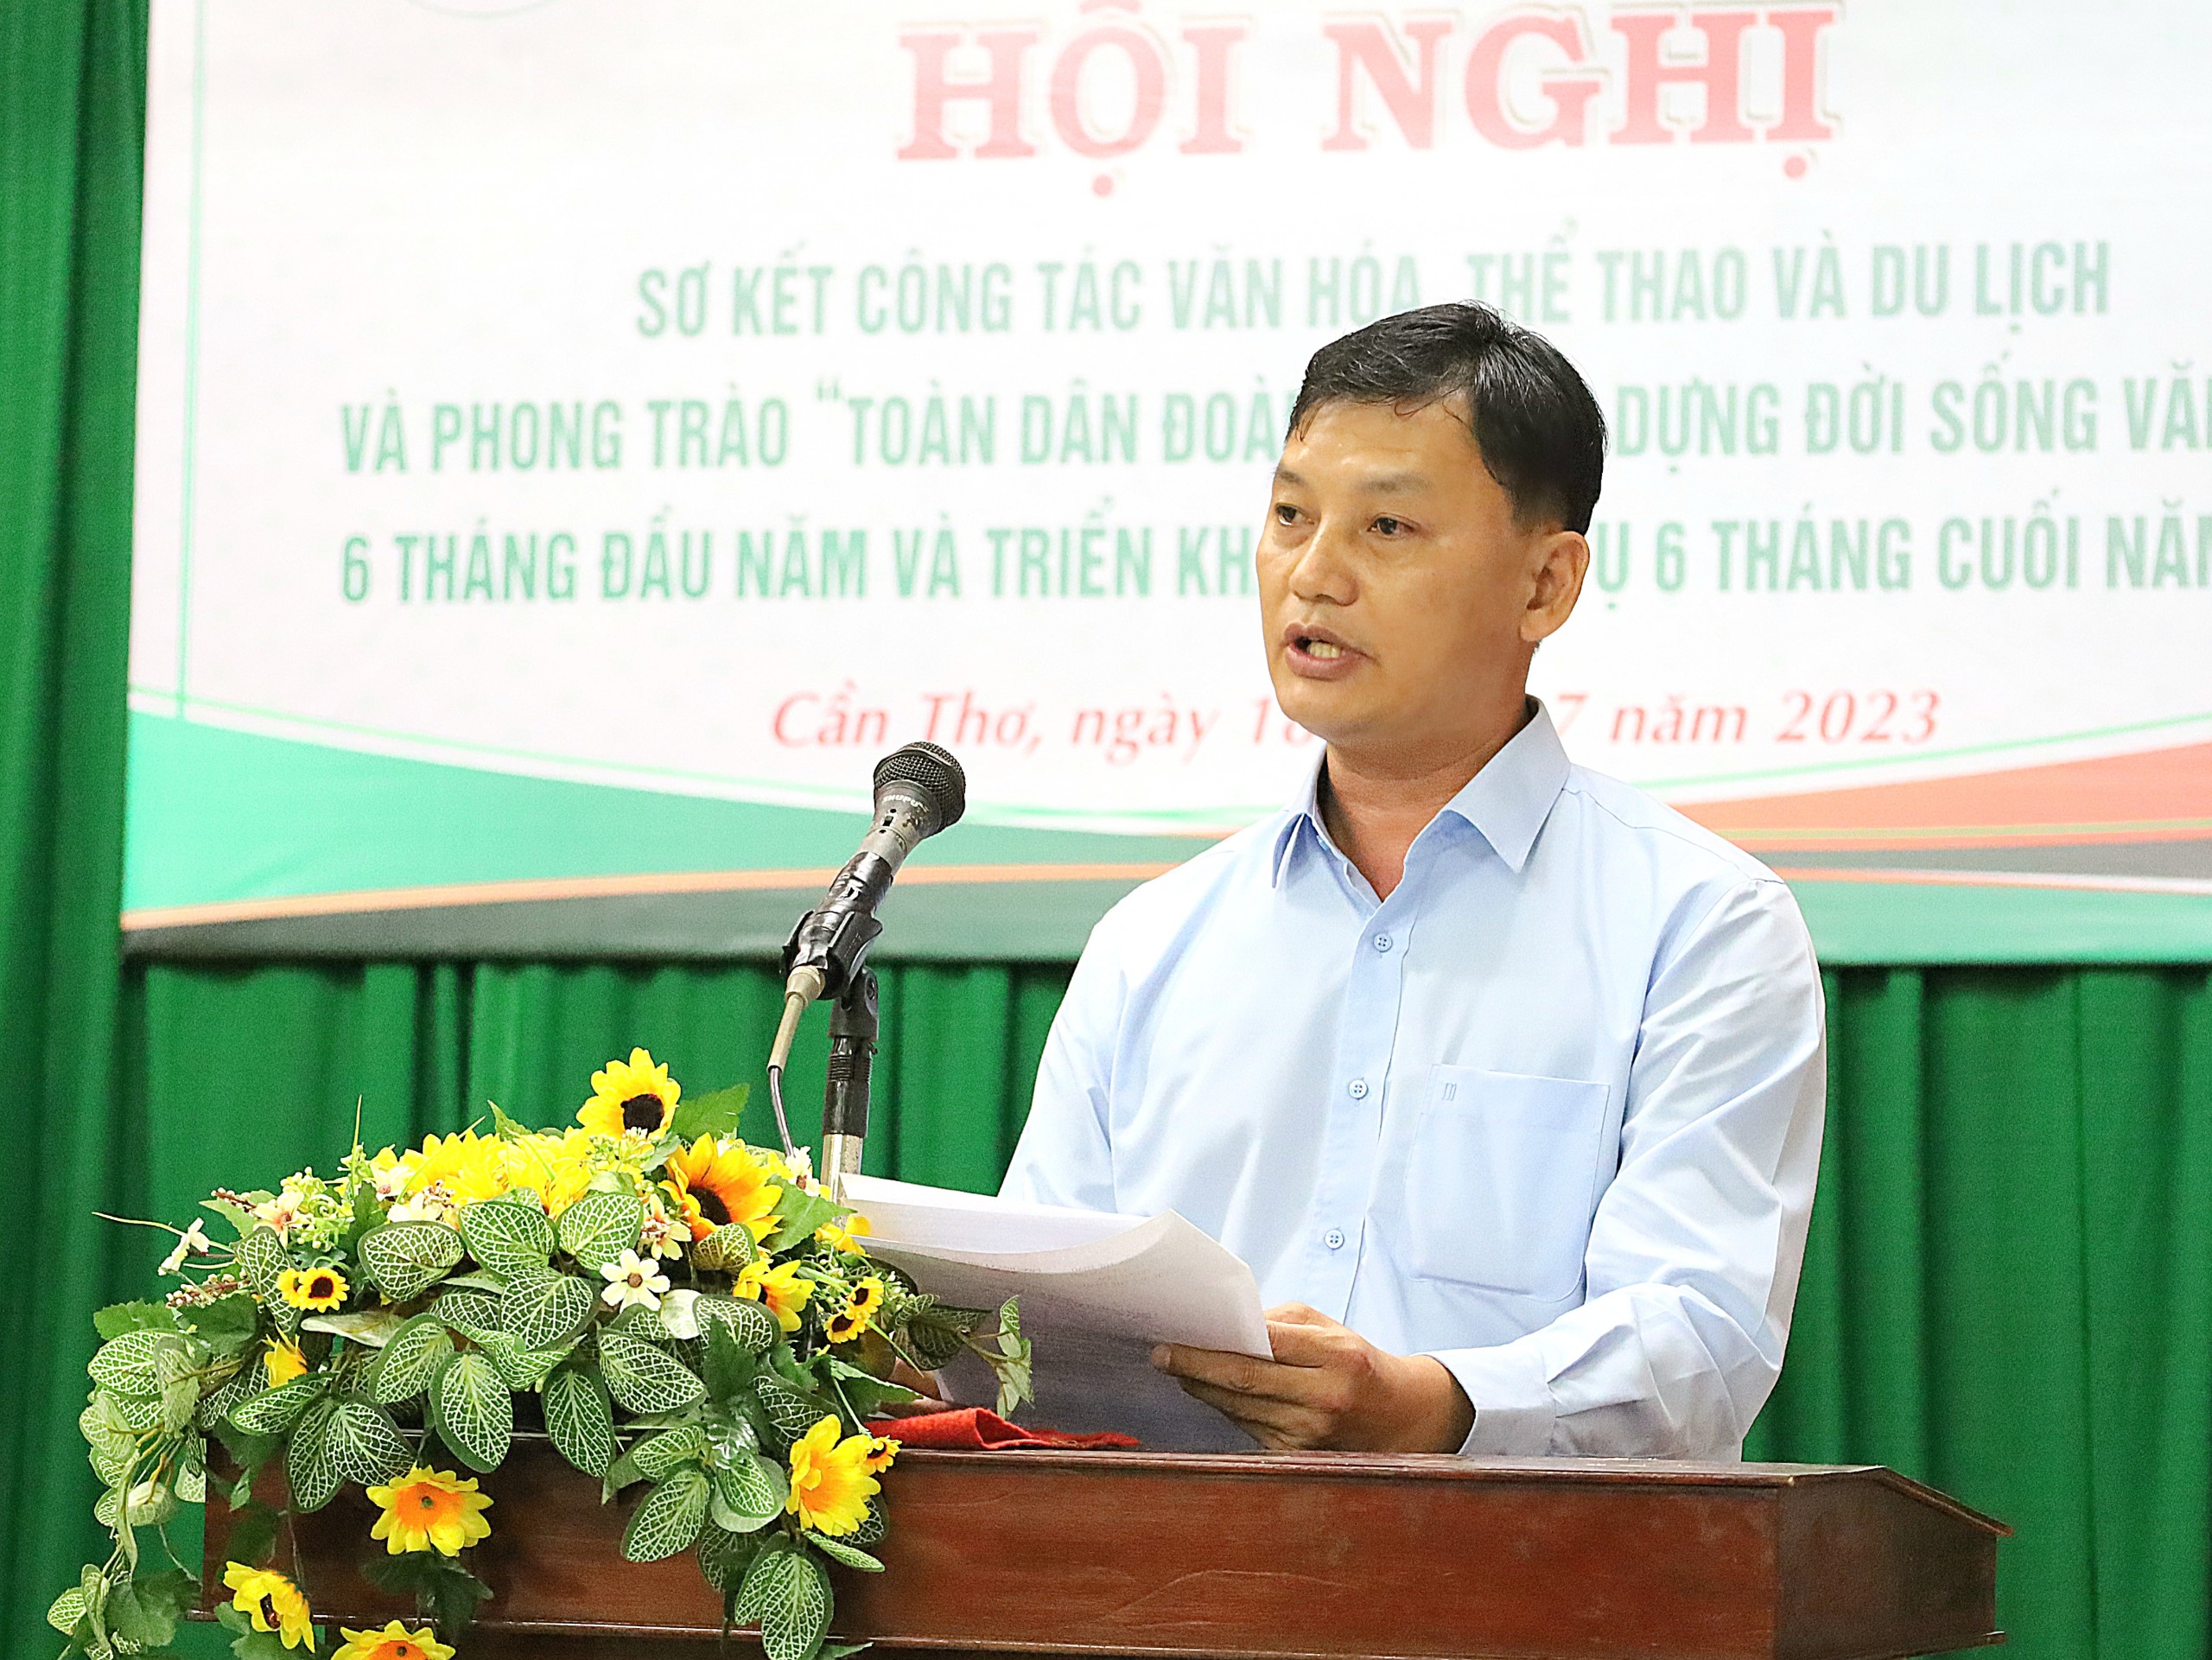 Ông Nguyễn Anh Tuấn - Phó Giám đốc Trung tâm TDTT TP. Cần Thơ phát biểu tham luận tại hội nghị.